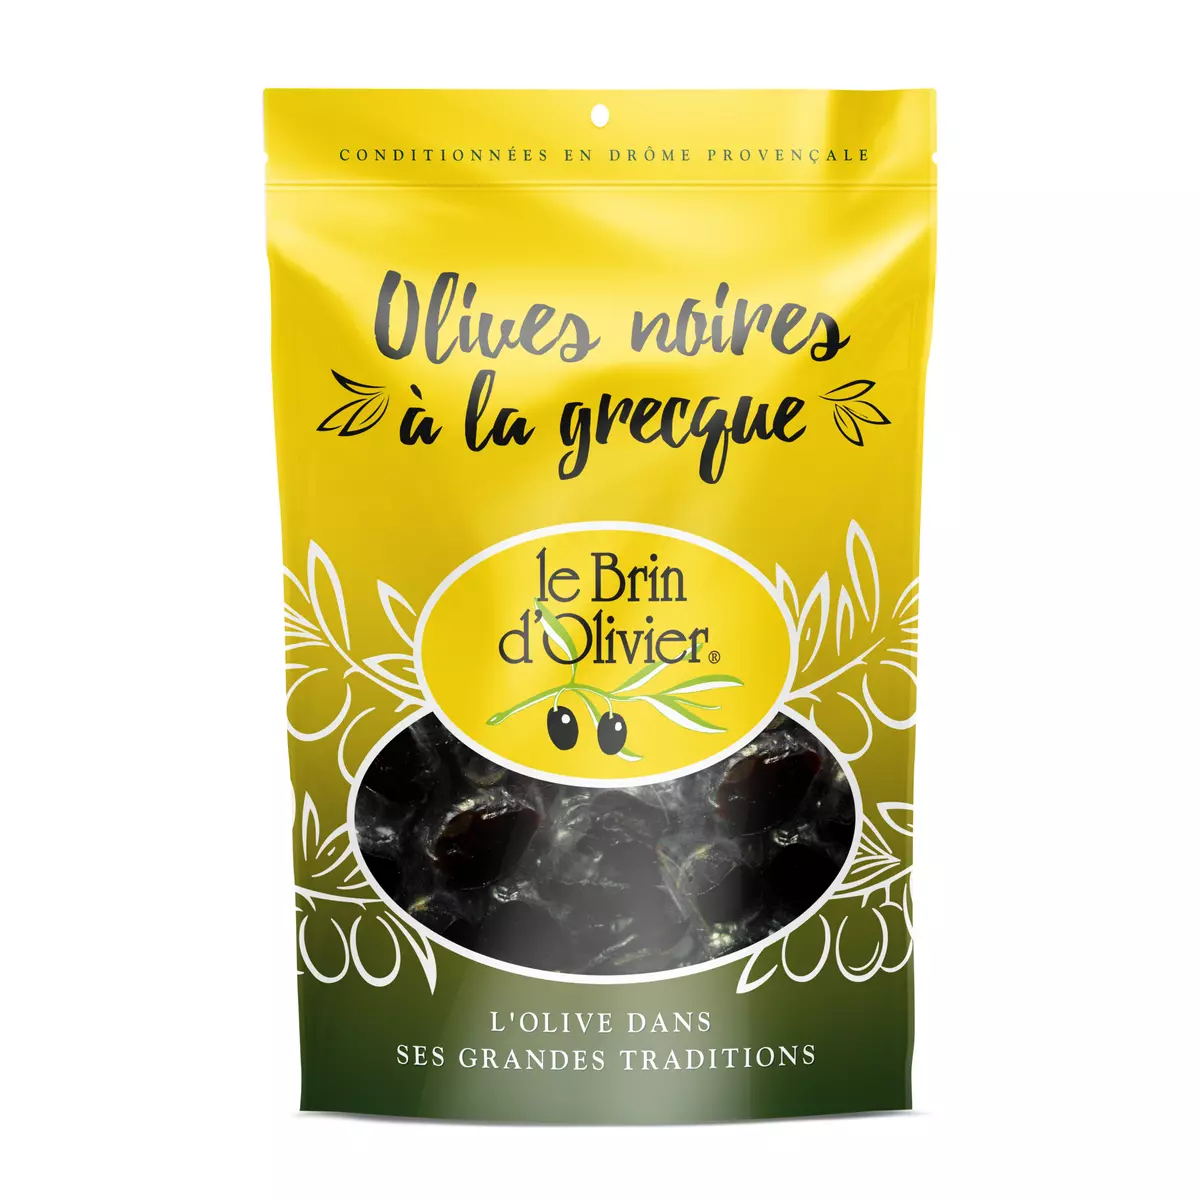 LE BRIN D'OLIVIER Olives noires à la grecque 500g